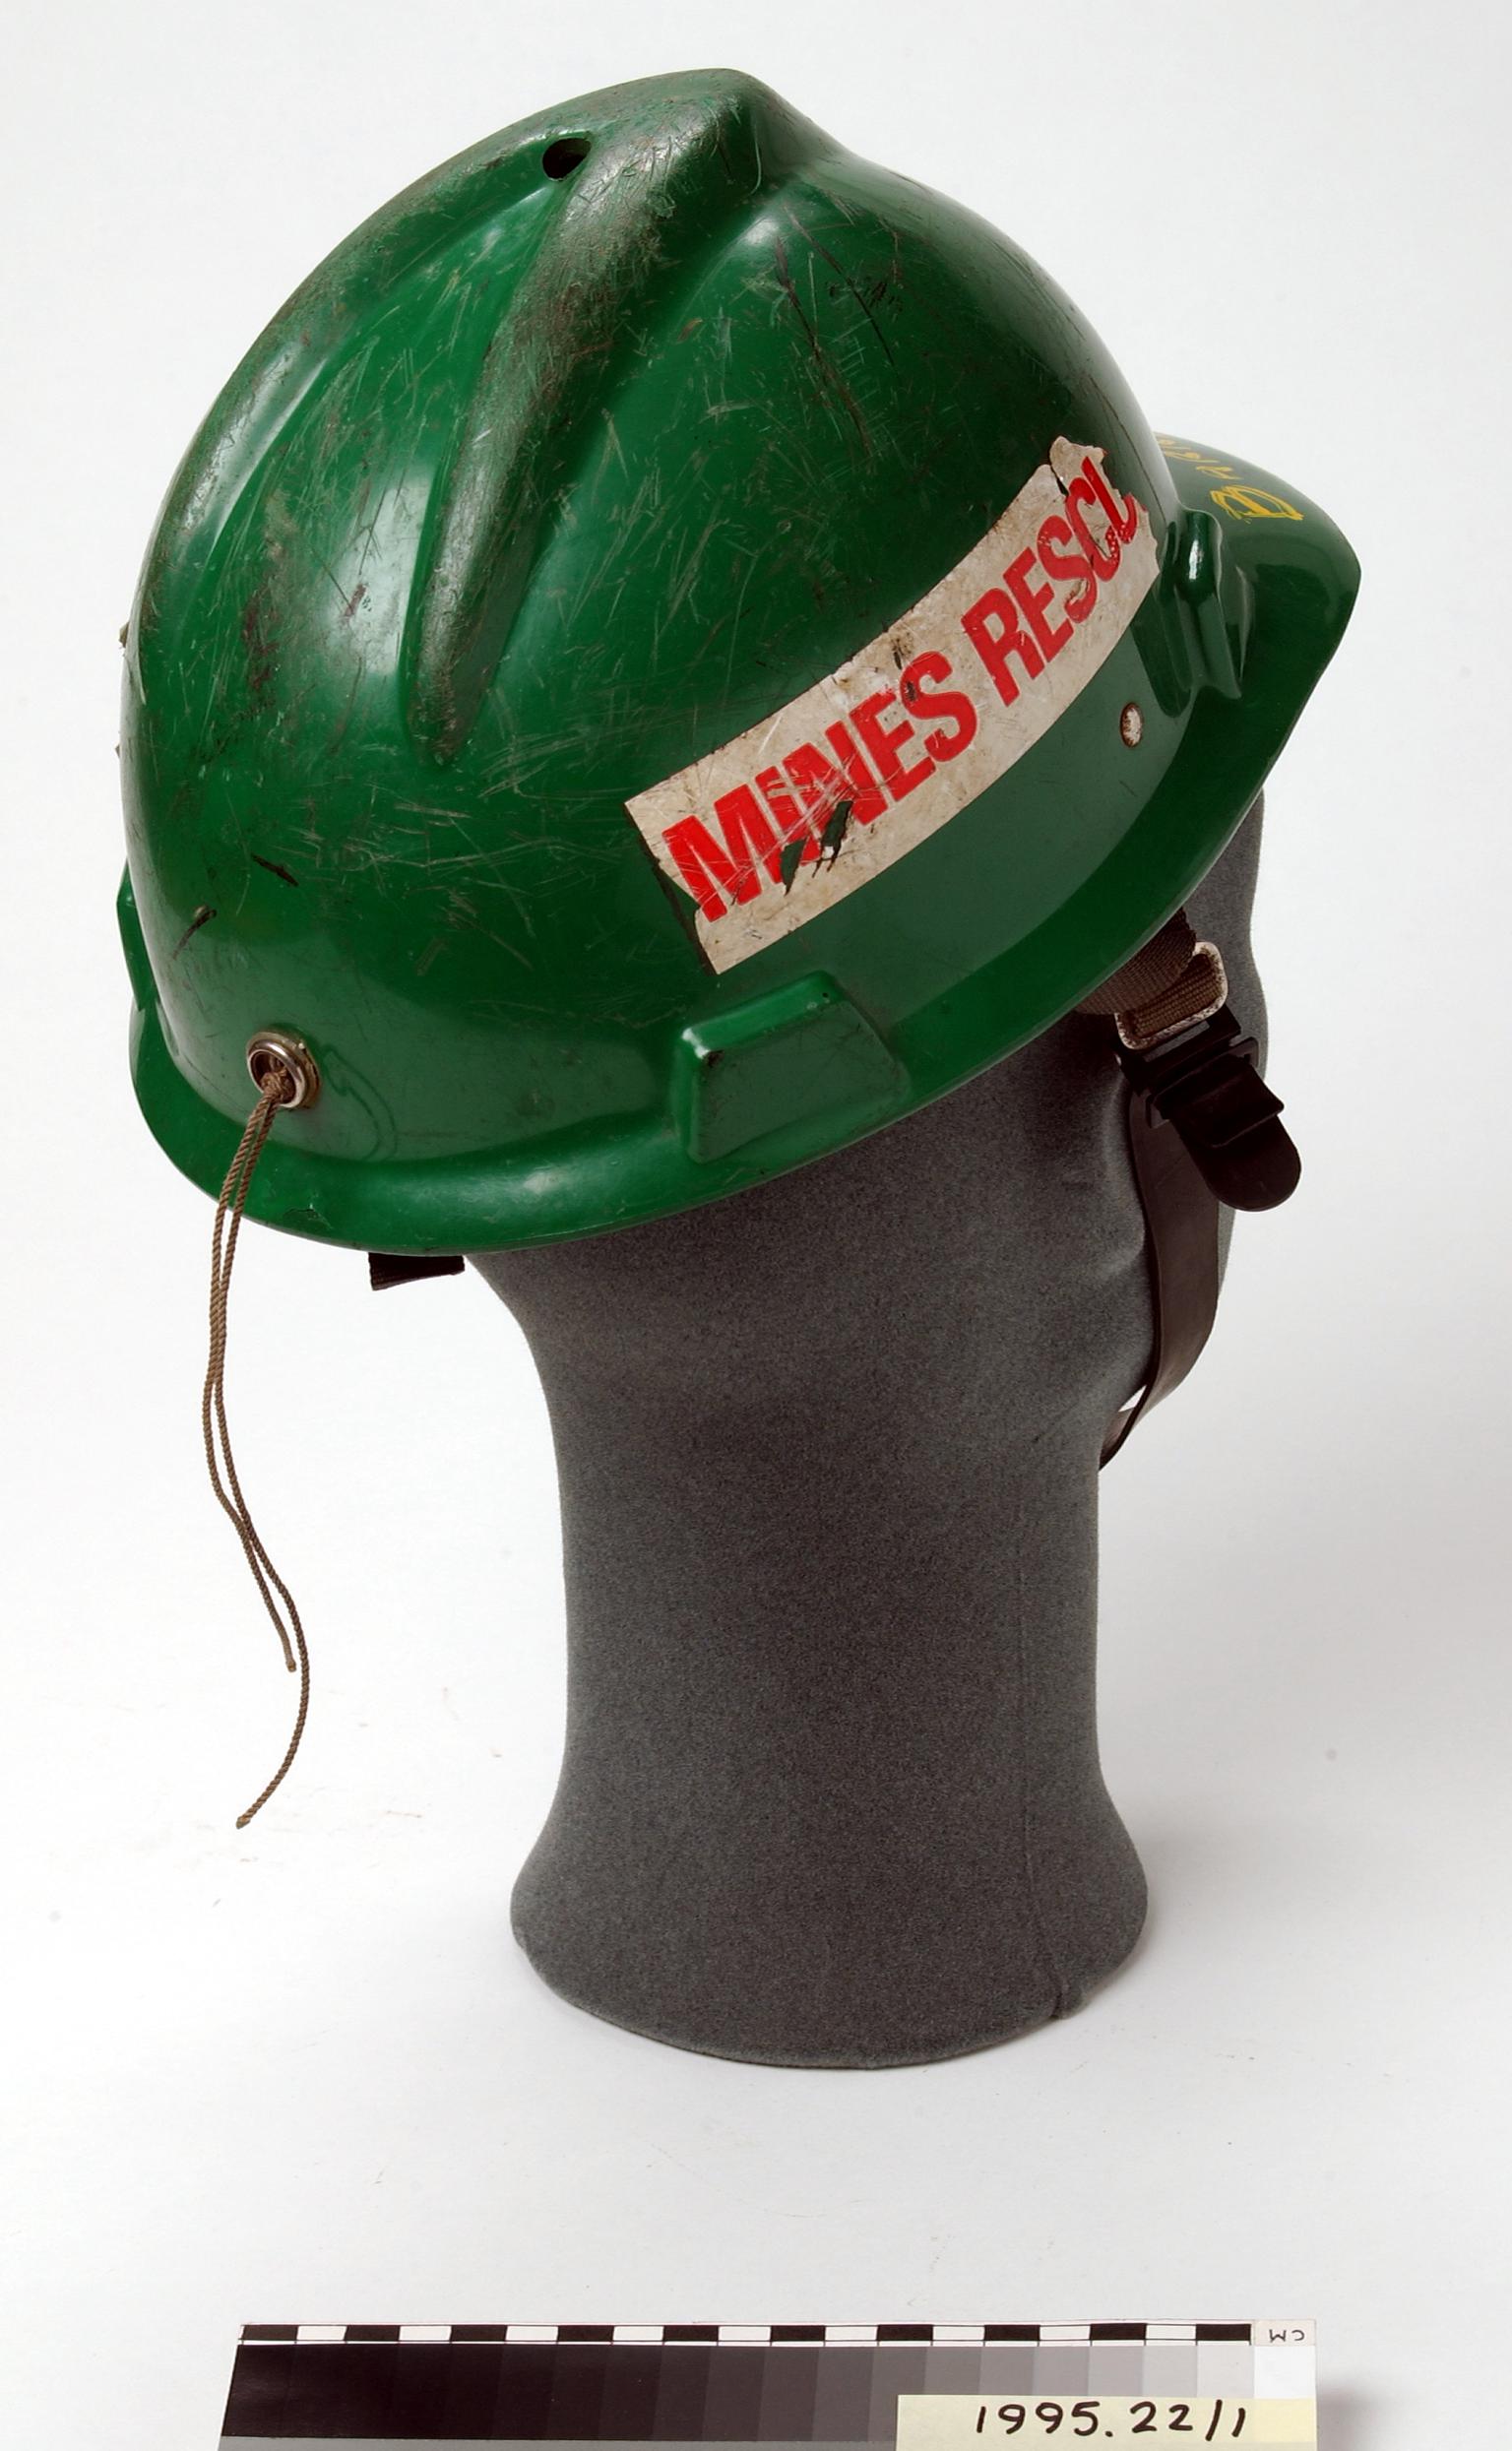 Mines Rescue helmet